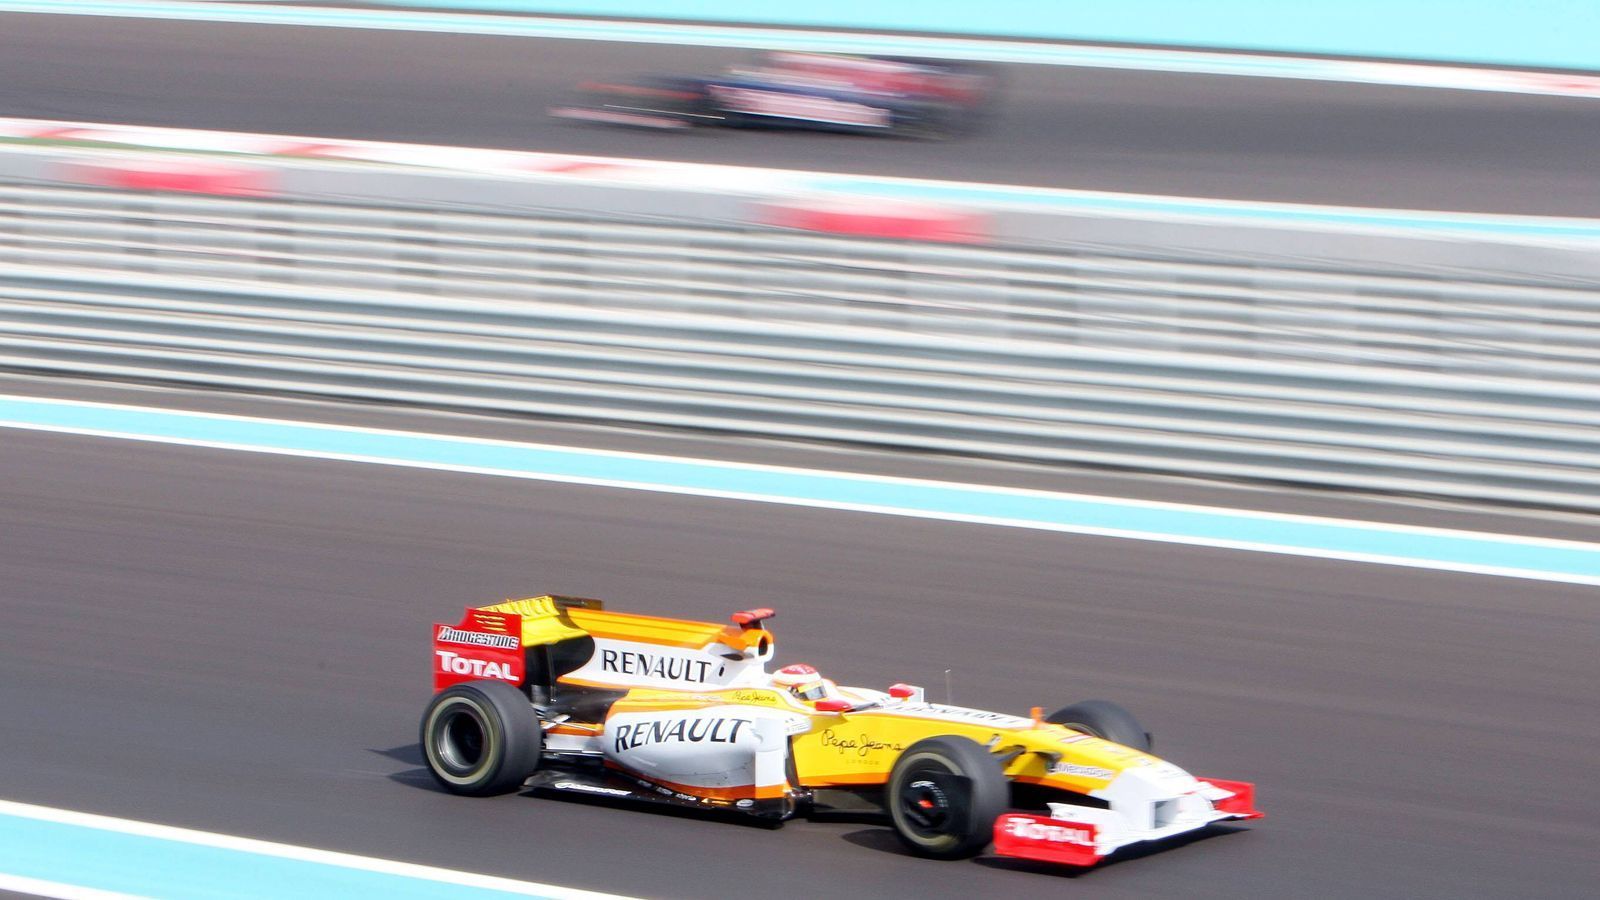 
                <strong>Formel 1: Fernando Alonsos spektakuläre Karriere</strong><br>
                Alonso und McLaren gehen nach nur einem Jahr wieder getrennte Wege, Alonso zurück zu Renault, wo er die Saisons 2008 und 2009 verbringt. Zwei mäßige Jahre ohne Aussicht auf den Titel. Schlagzeilen macht der Skandal von Singapur: Briatore hat Nelson Piquet angewiesen, in eine Mauer zu fahren, Alonso nutzte die Safety-Car-Phase und gewann. Briatore nimmt seinen Hut, Alonso leugnet bis heute jegliches Wissen um den Betrug.
              